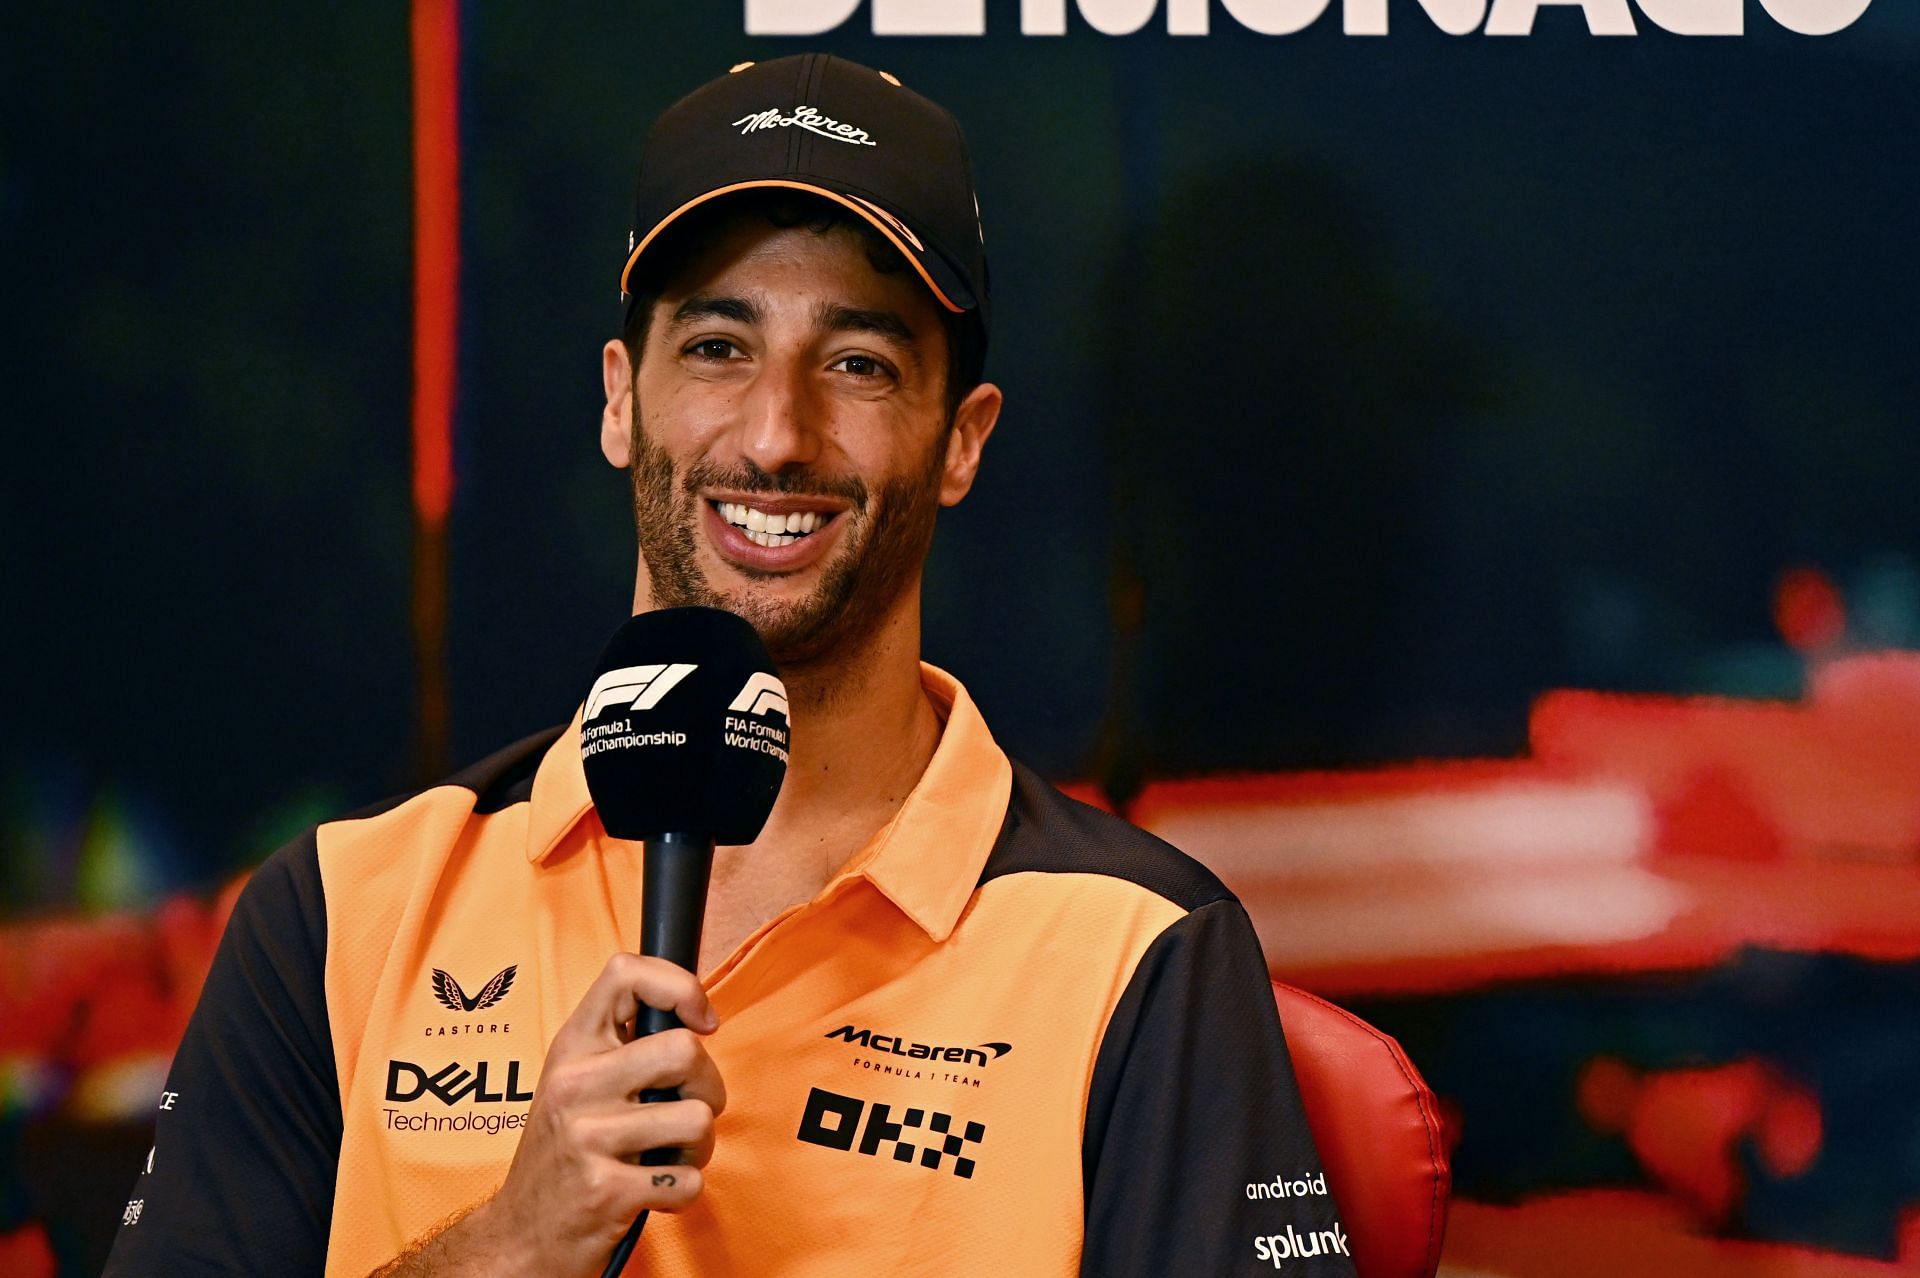 Will Daniel Ricciardo be able to regain his form?